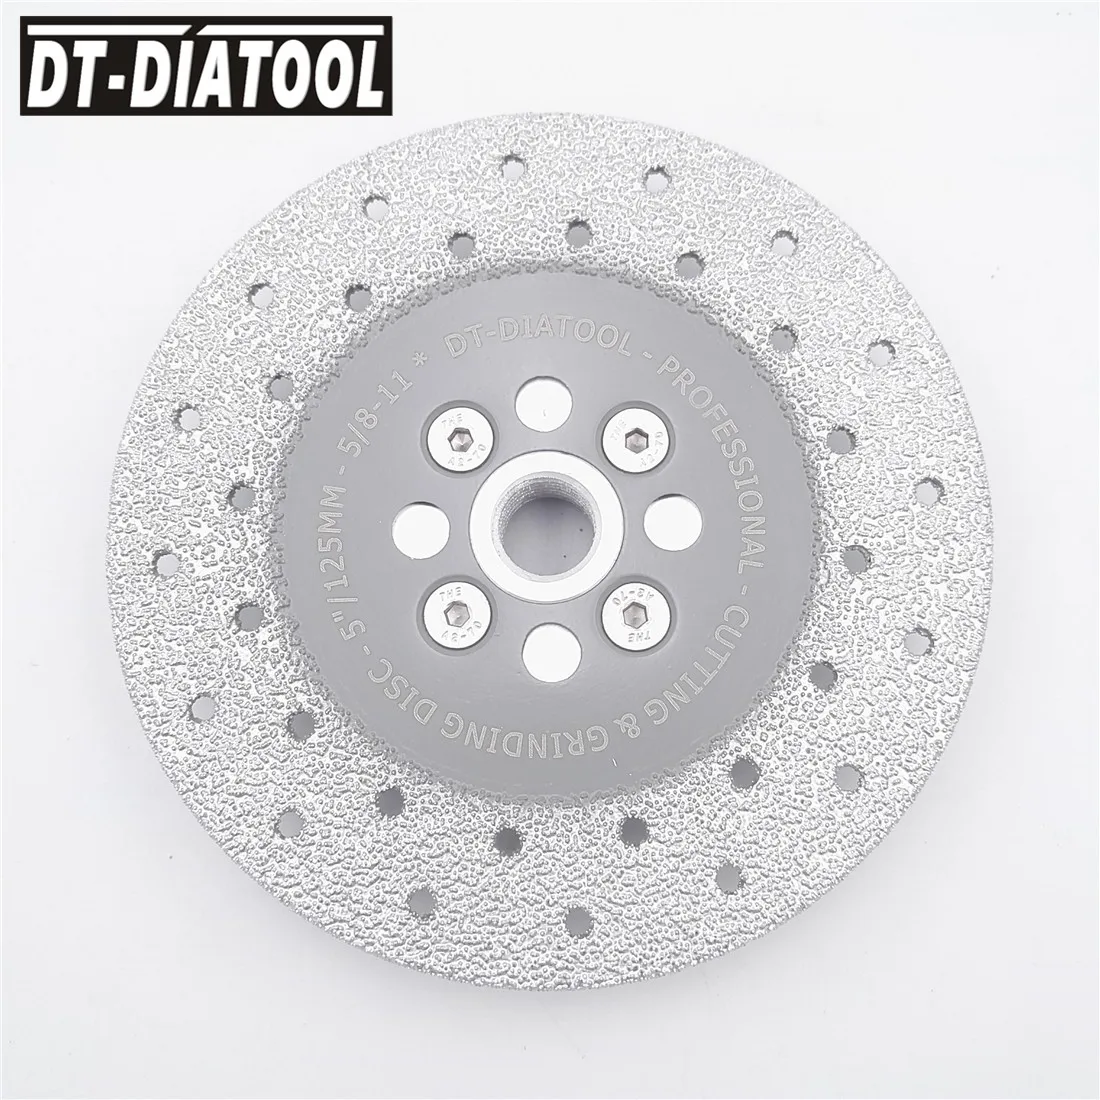 DT-DIATOOL 1 шт. двухсторонний вакуумный паяный Алмазный диск с 5/8-11 фланец шлифовальный круг пилы для гранита и бетона